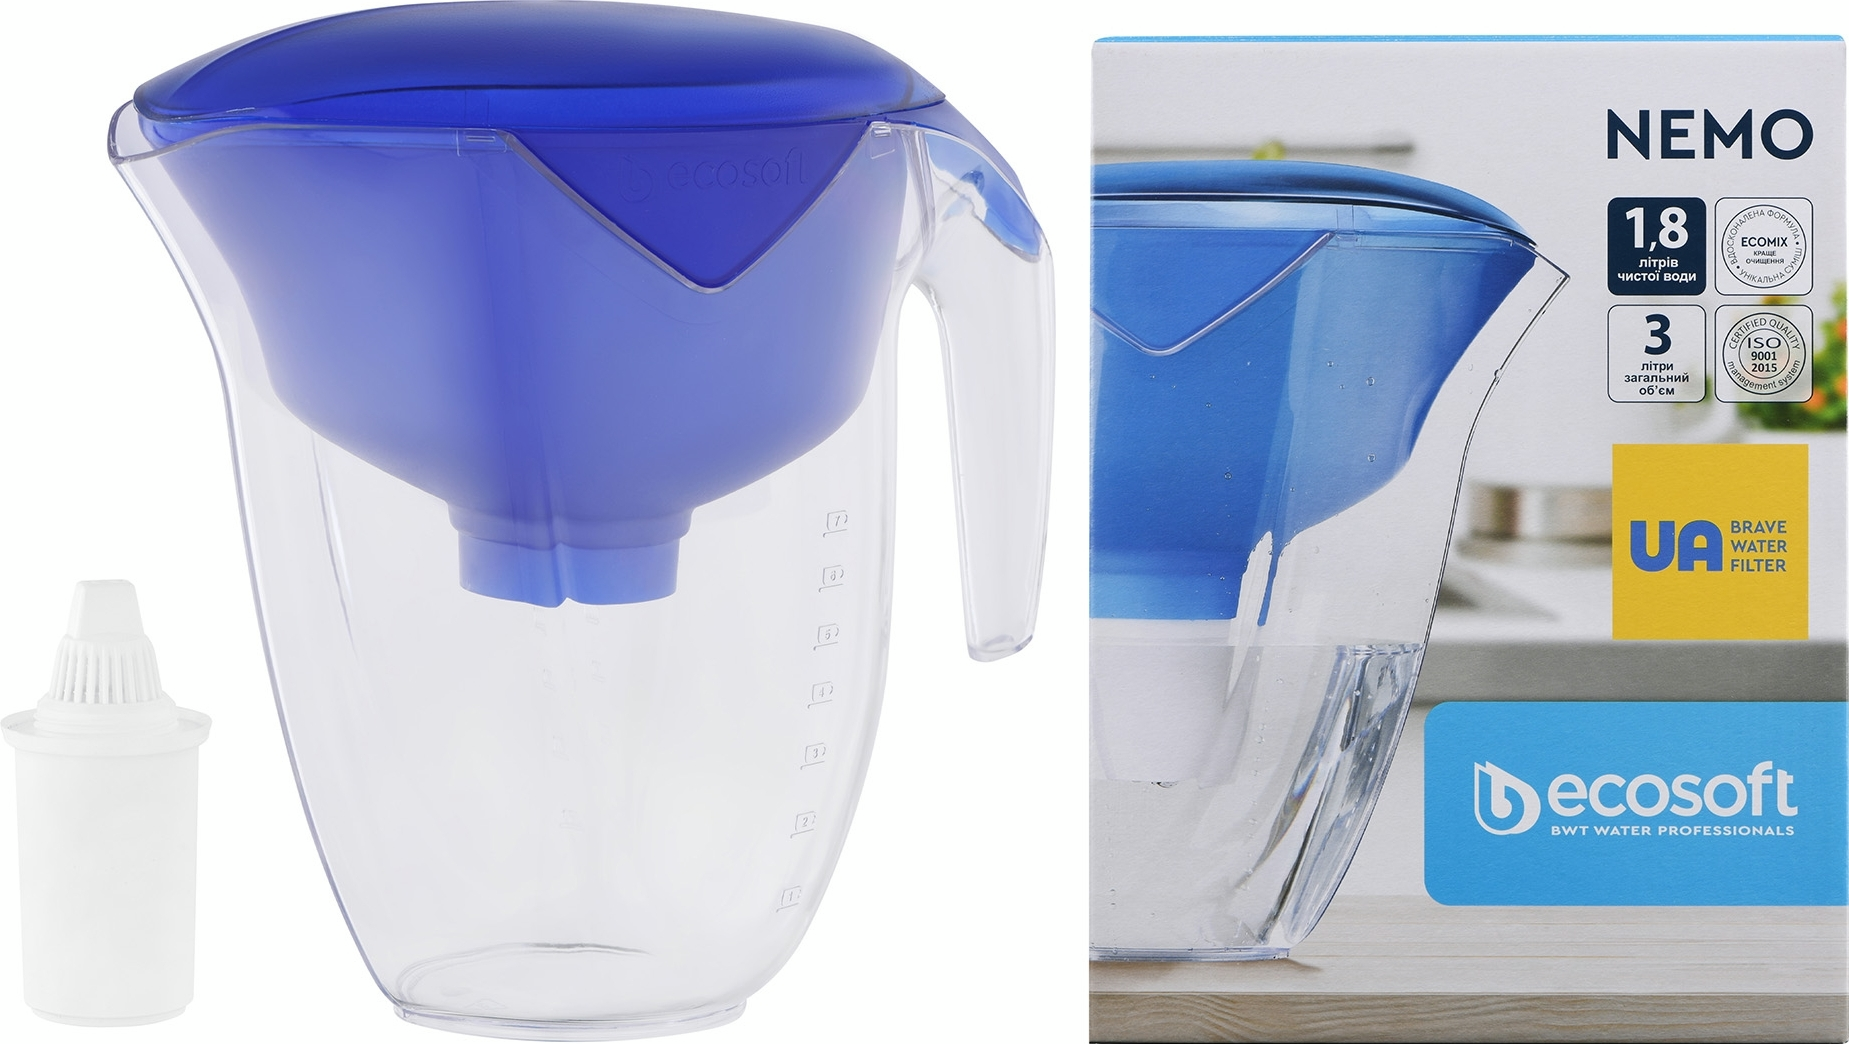 Фильтр-кувшин Ecosoft Нemo 3л (1.8л очищенной воды), синий (FMVNEMOBECO) фото 3